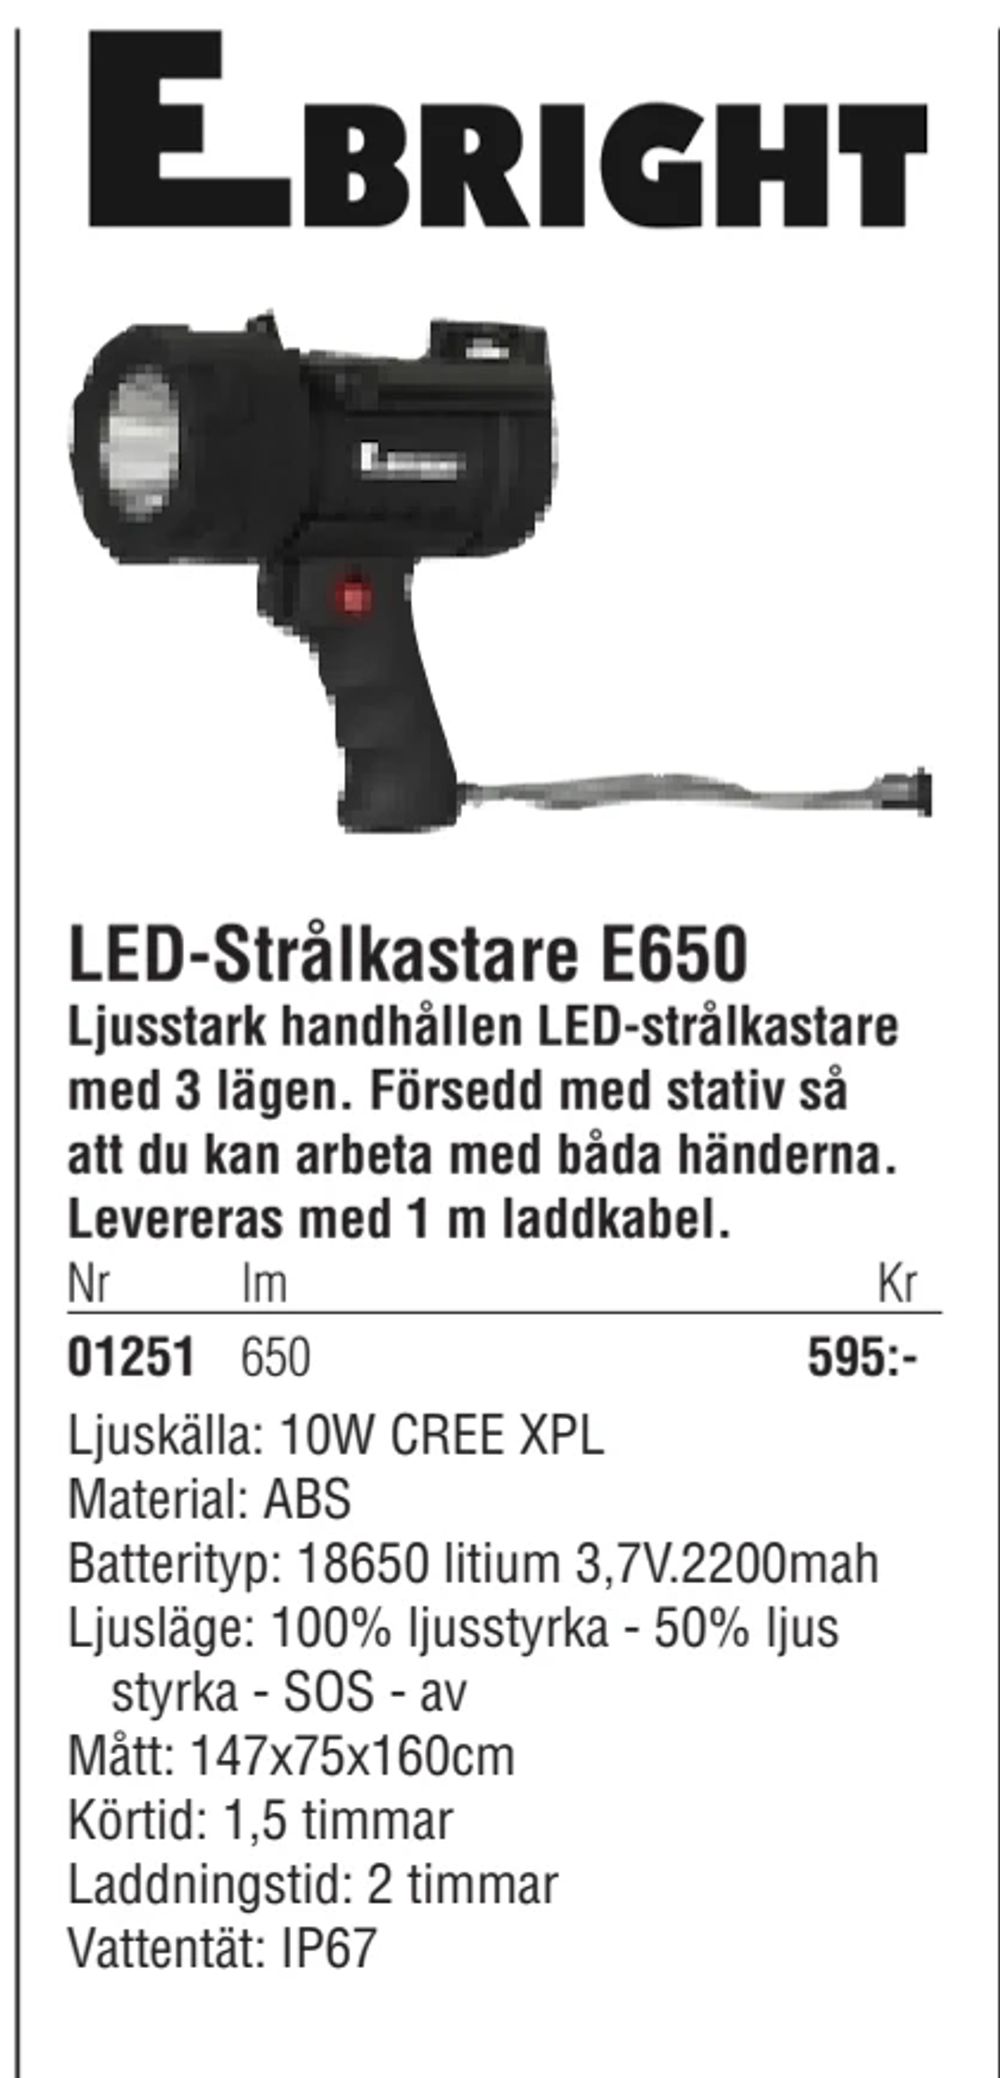 Erbjudanden på LED-Strålkastare E650 från Erlandsons Brygga för 595 kr